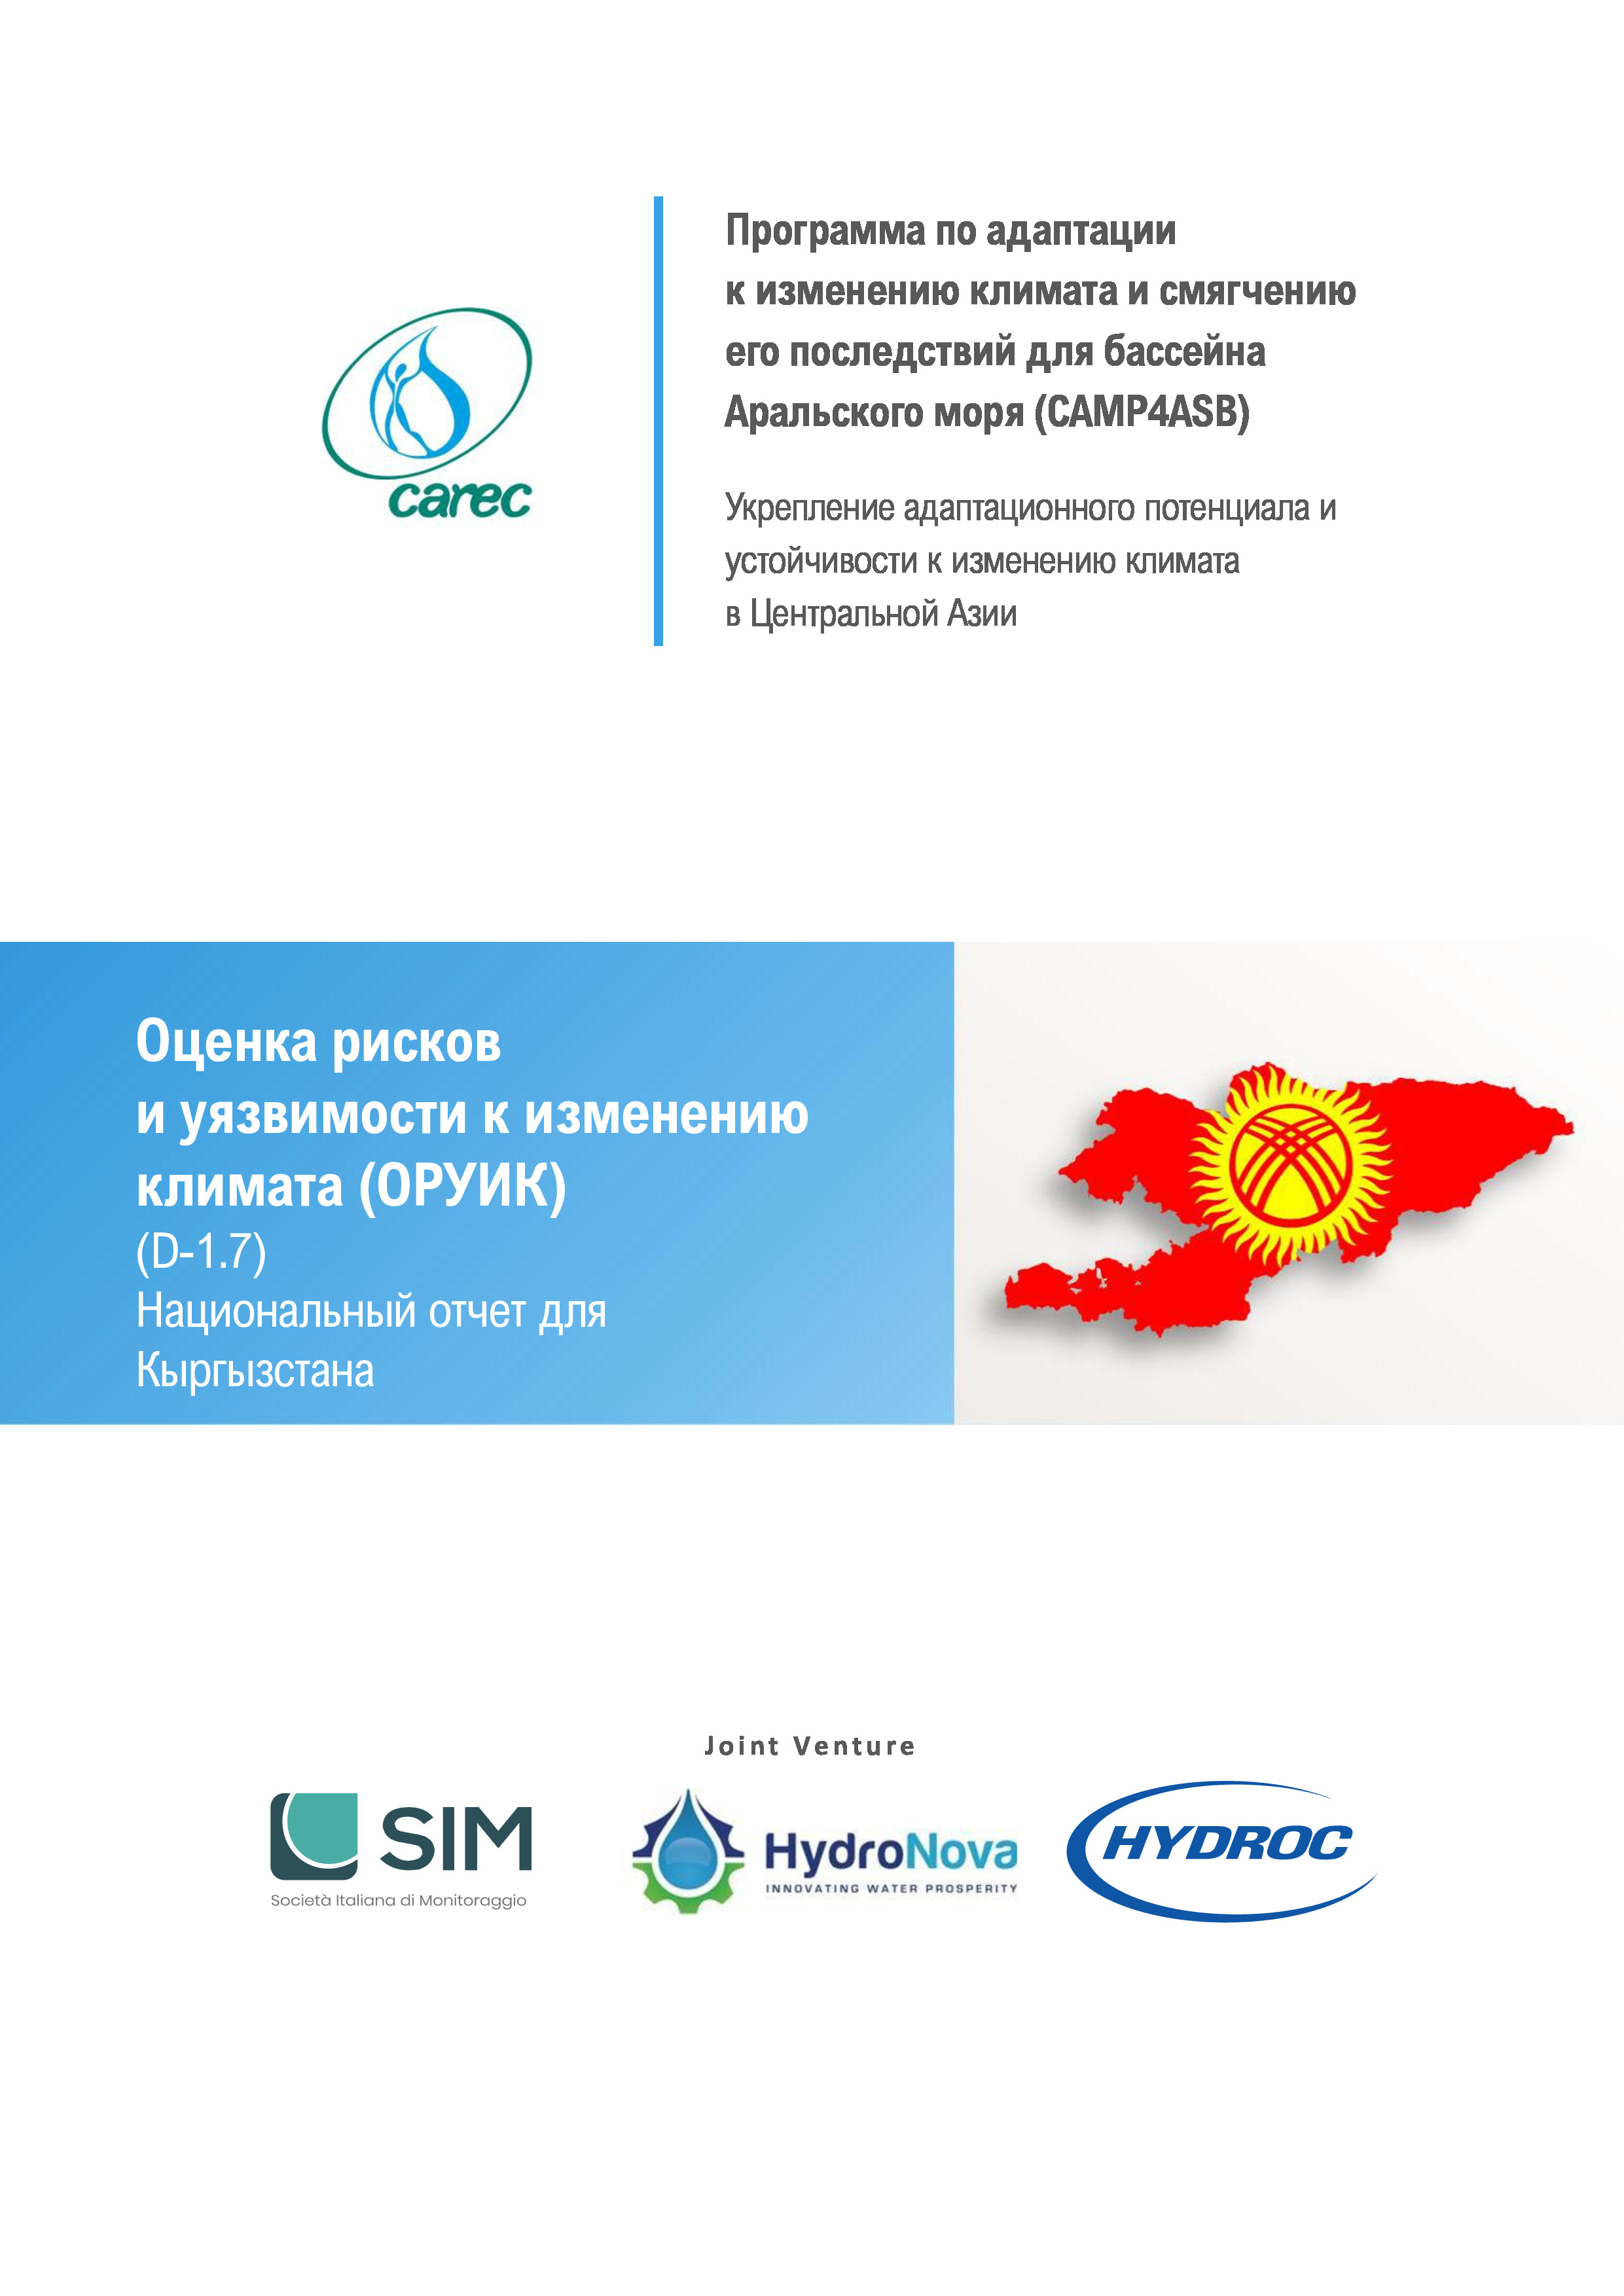 Оценка рисков и уязвимости к изменению климата (ОРУИК). Национальный отчет для Кыргызстана, 2021